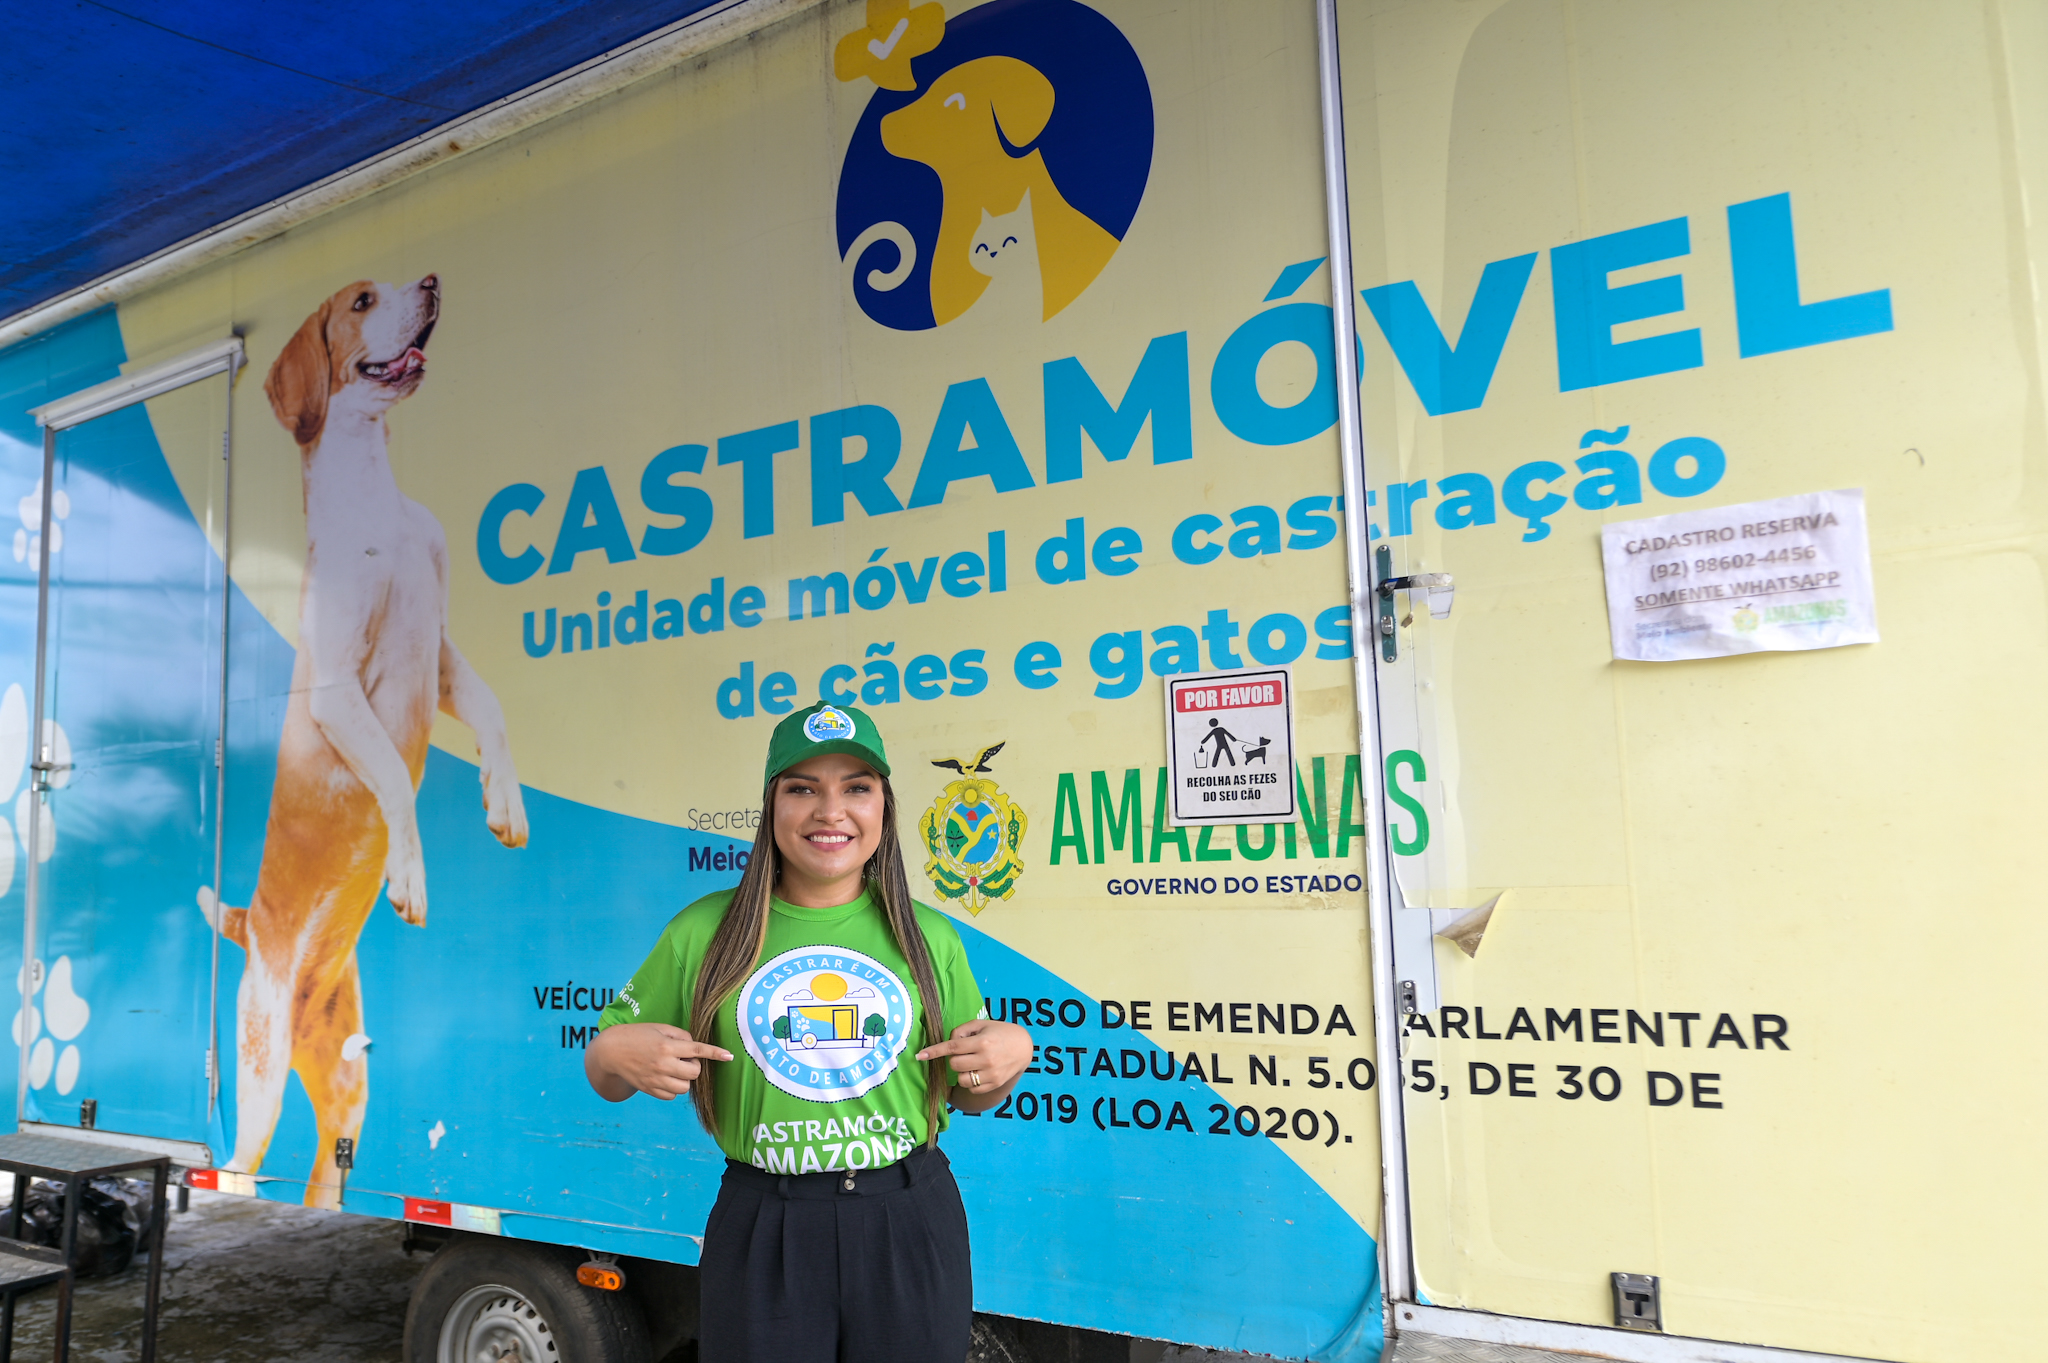 Deputada Joana Darc confirma Castramovel no Programa Governo Presente no bairro Novo